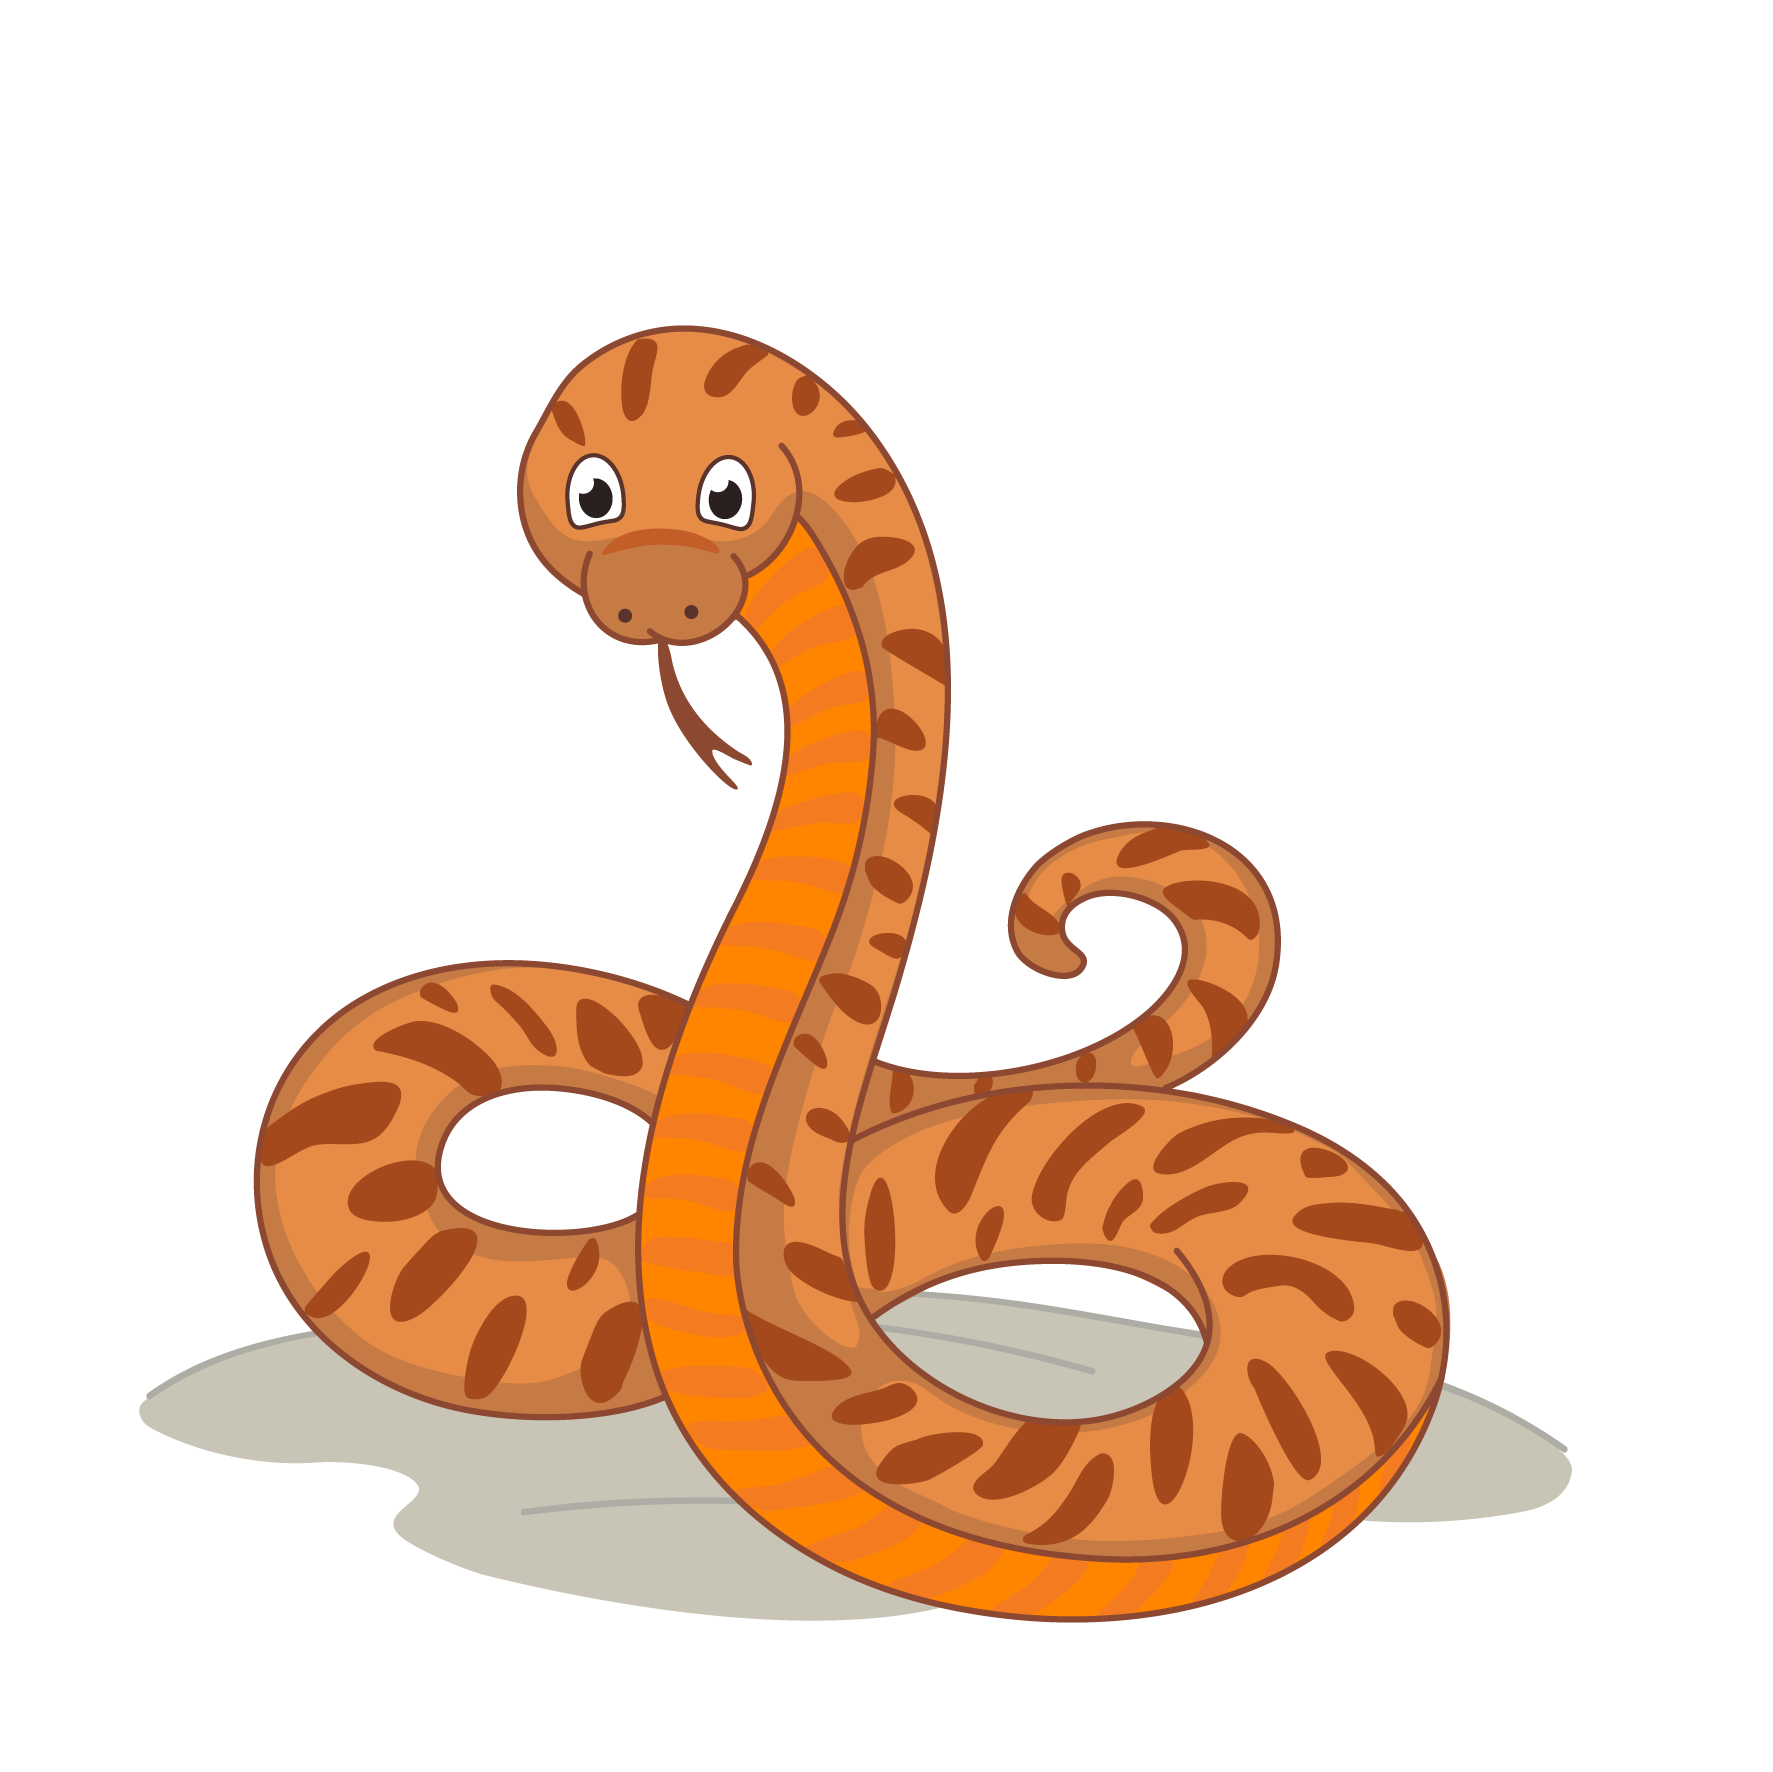 Snake information